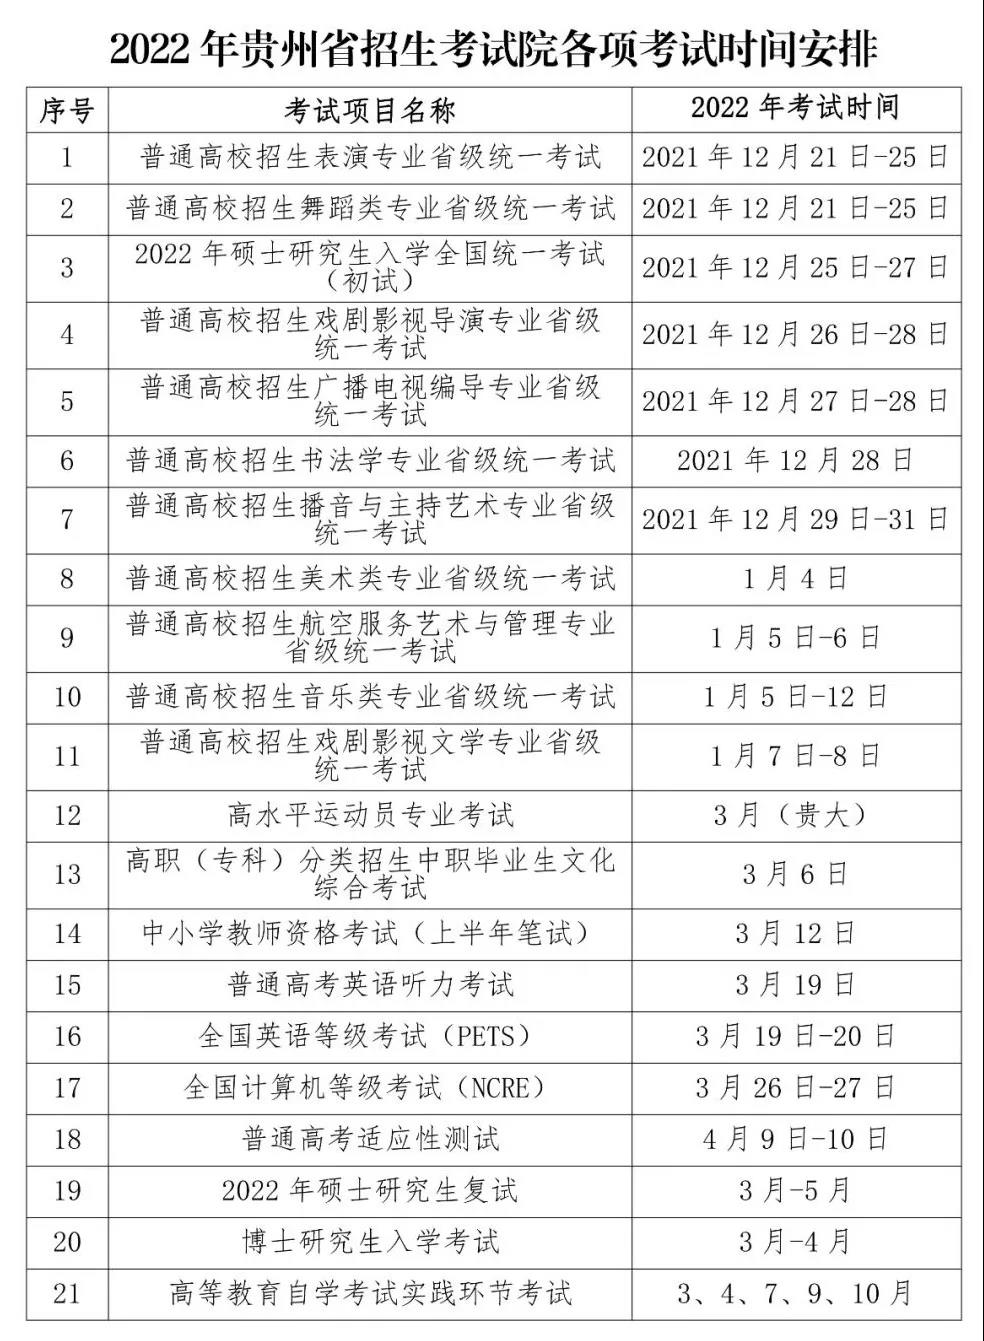 2022年贵州省各项教育考试时间安排